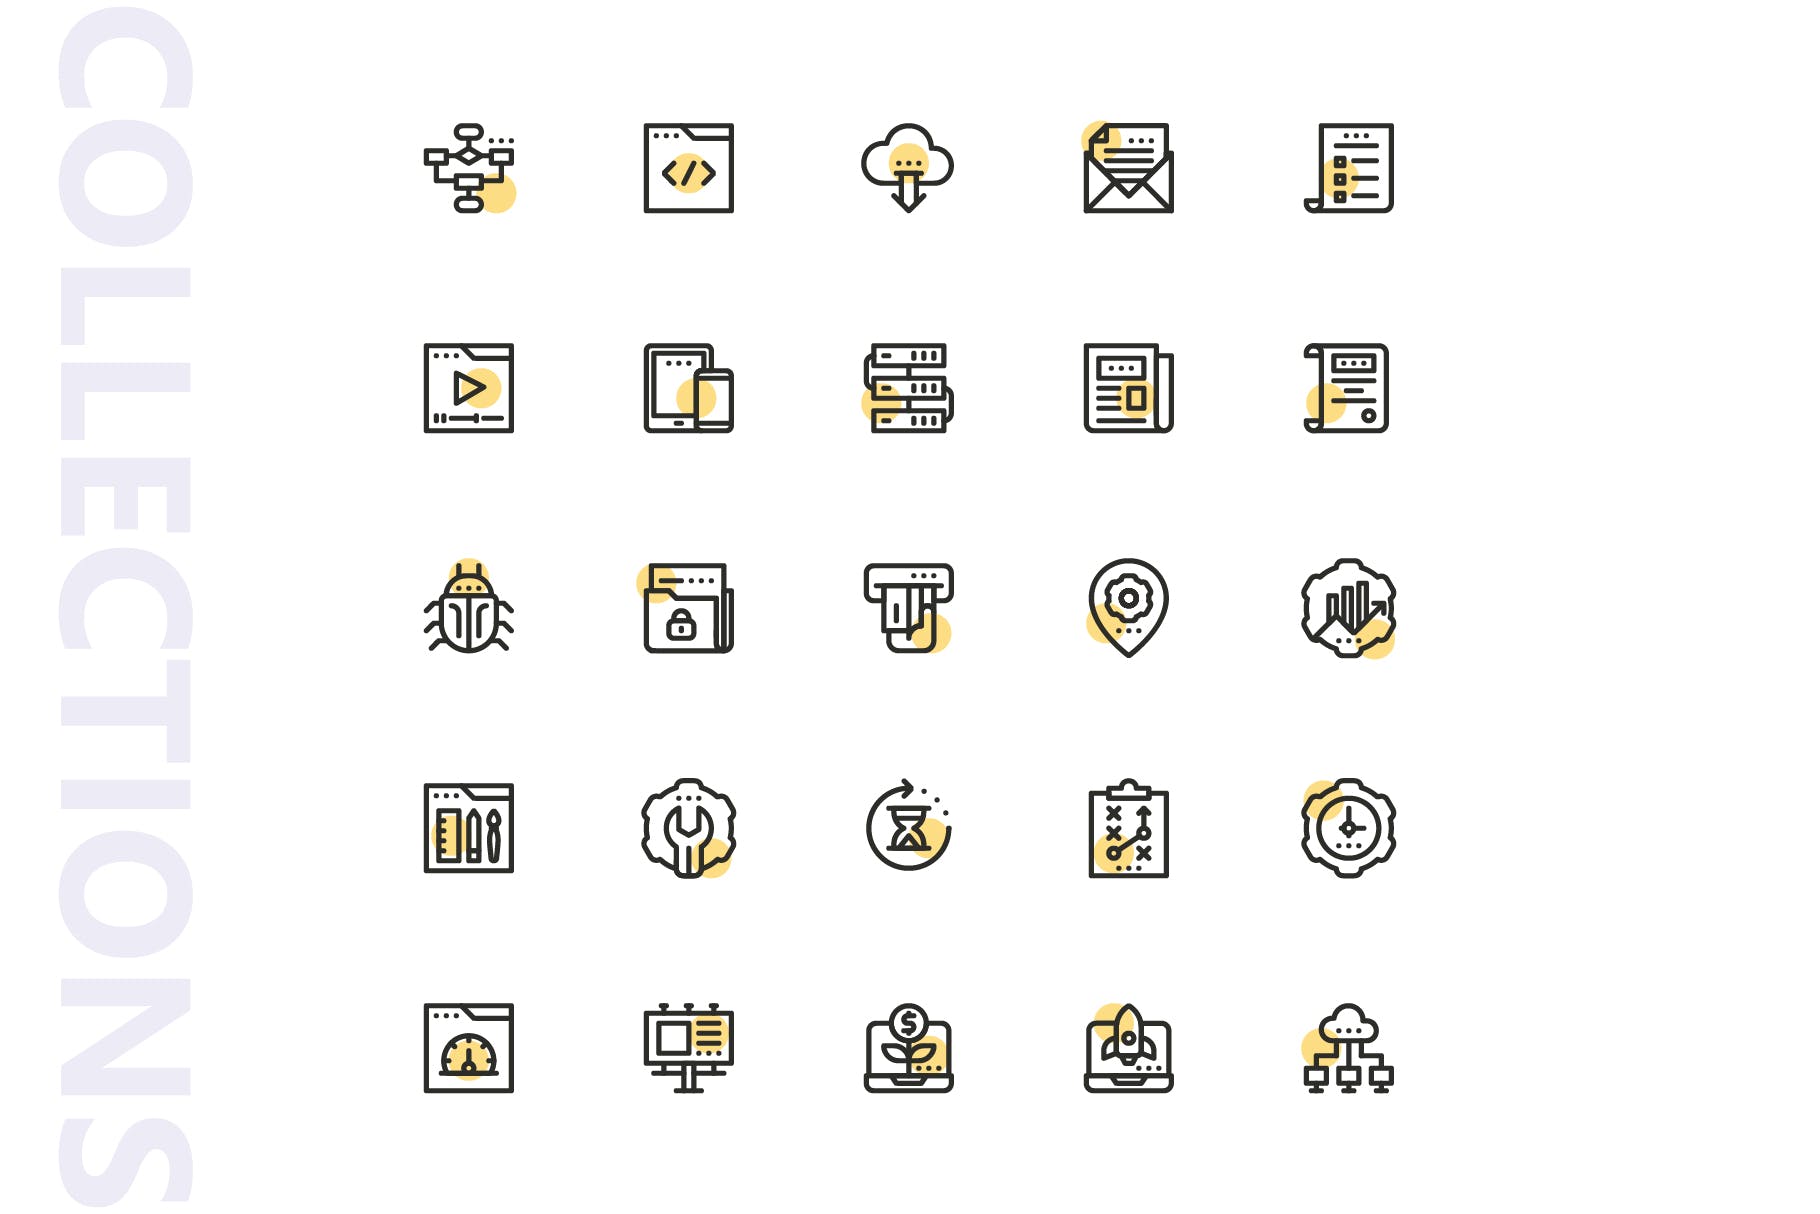 25枚SEO搜索引擎优化营销矢量圆点装饰蚂蚁素材精选图标v1 SEO Marketing Shape Icons插图(3)